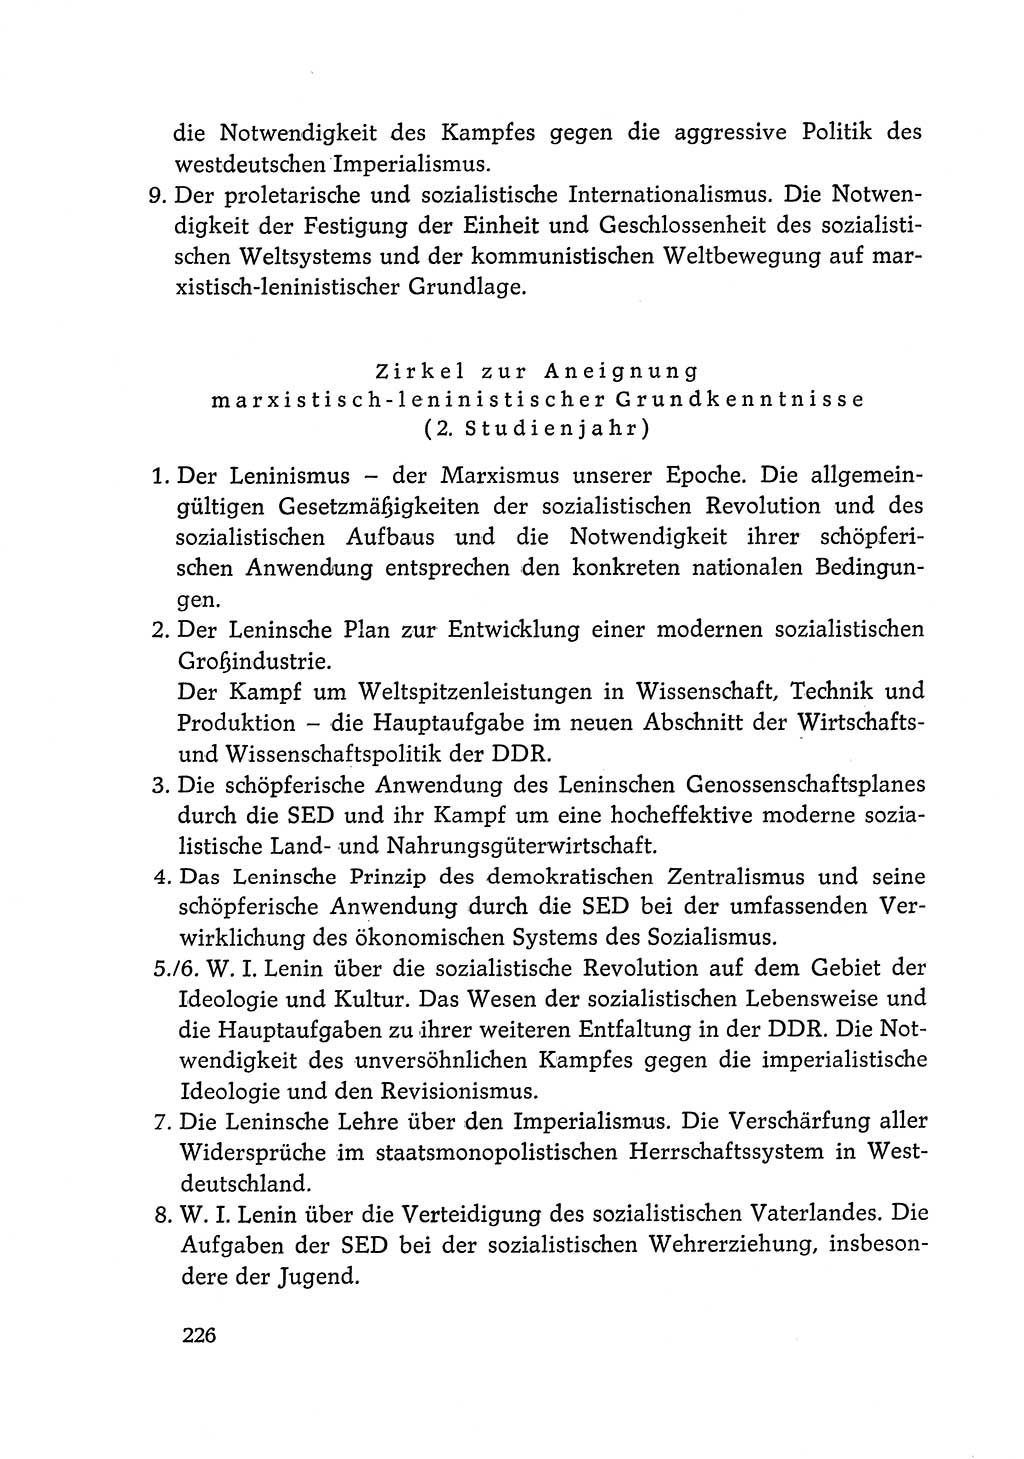 Dokumente der Sozialistischen Einheitspartei Deutschlands (SED) [Deutsche Demokratische Republik (DDR)] 1968-1969, Seite 226 (Dok. SED DDR 1968-1969, S. 226)